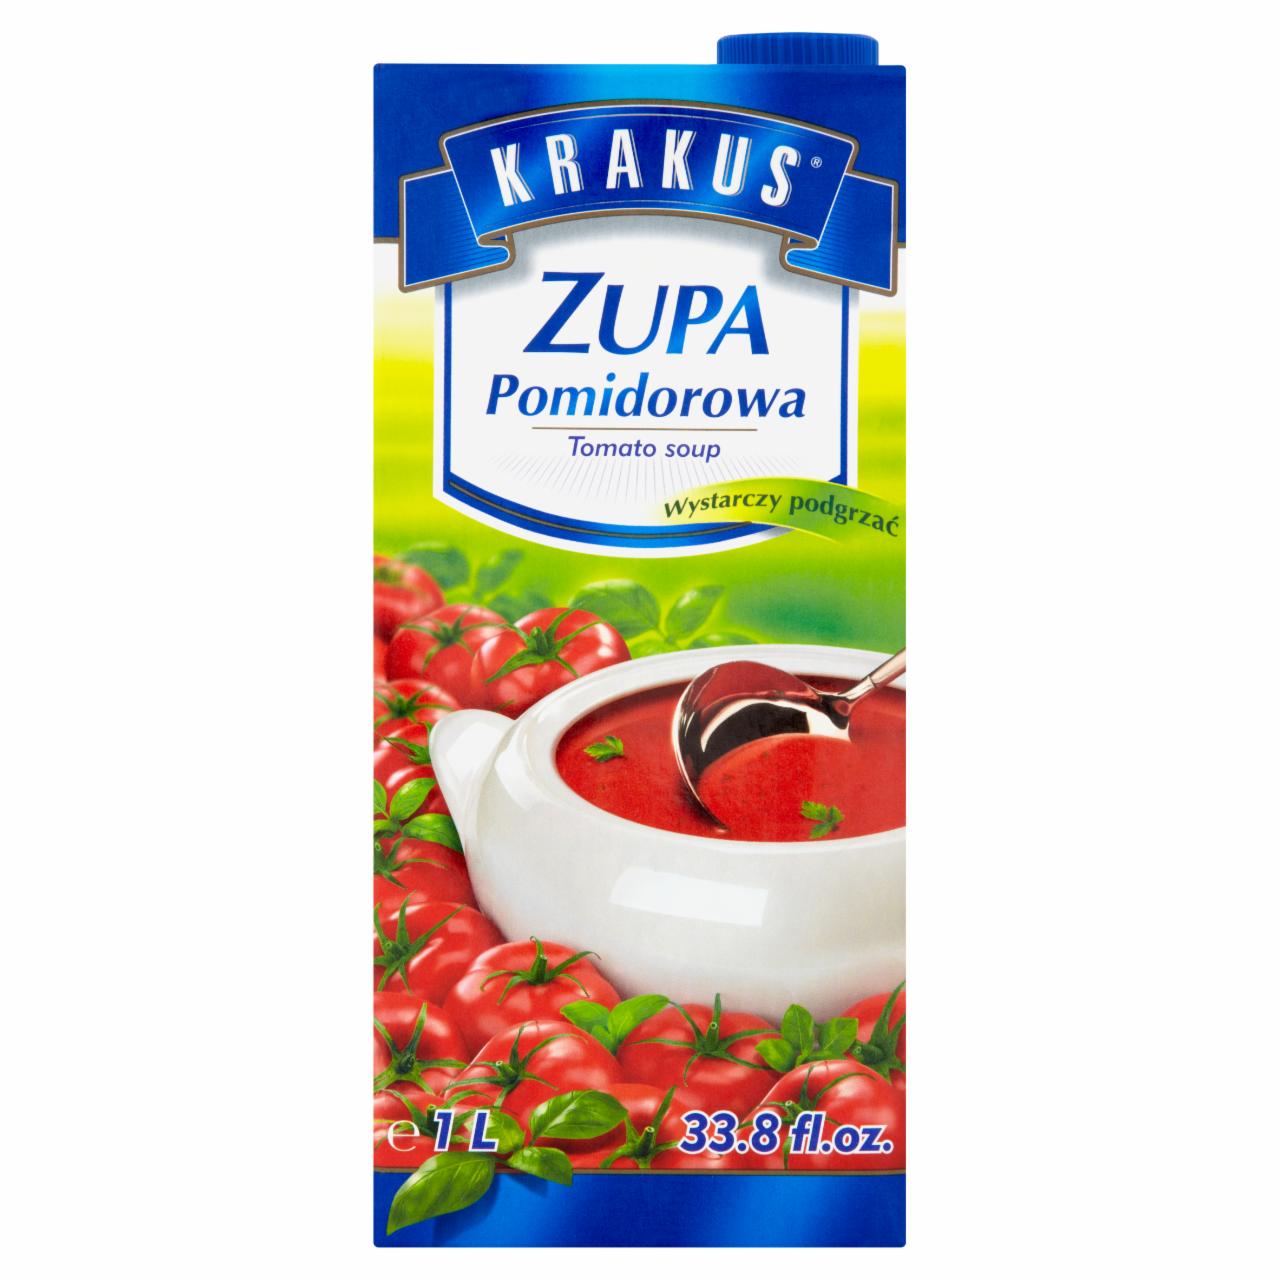 Zdjęcia - Krakus Zupa pomidorowa 1 l